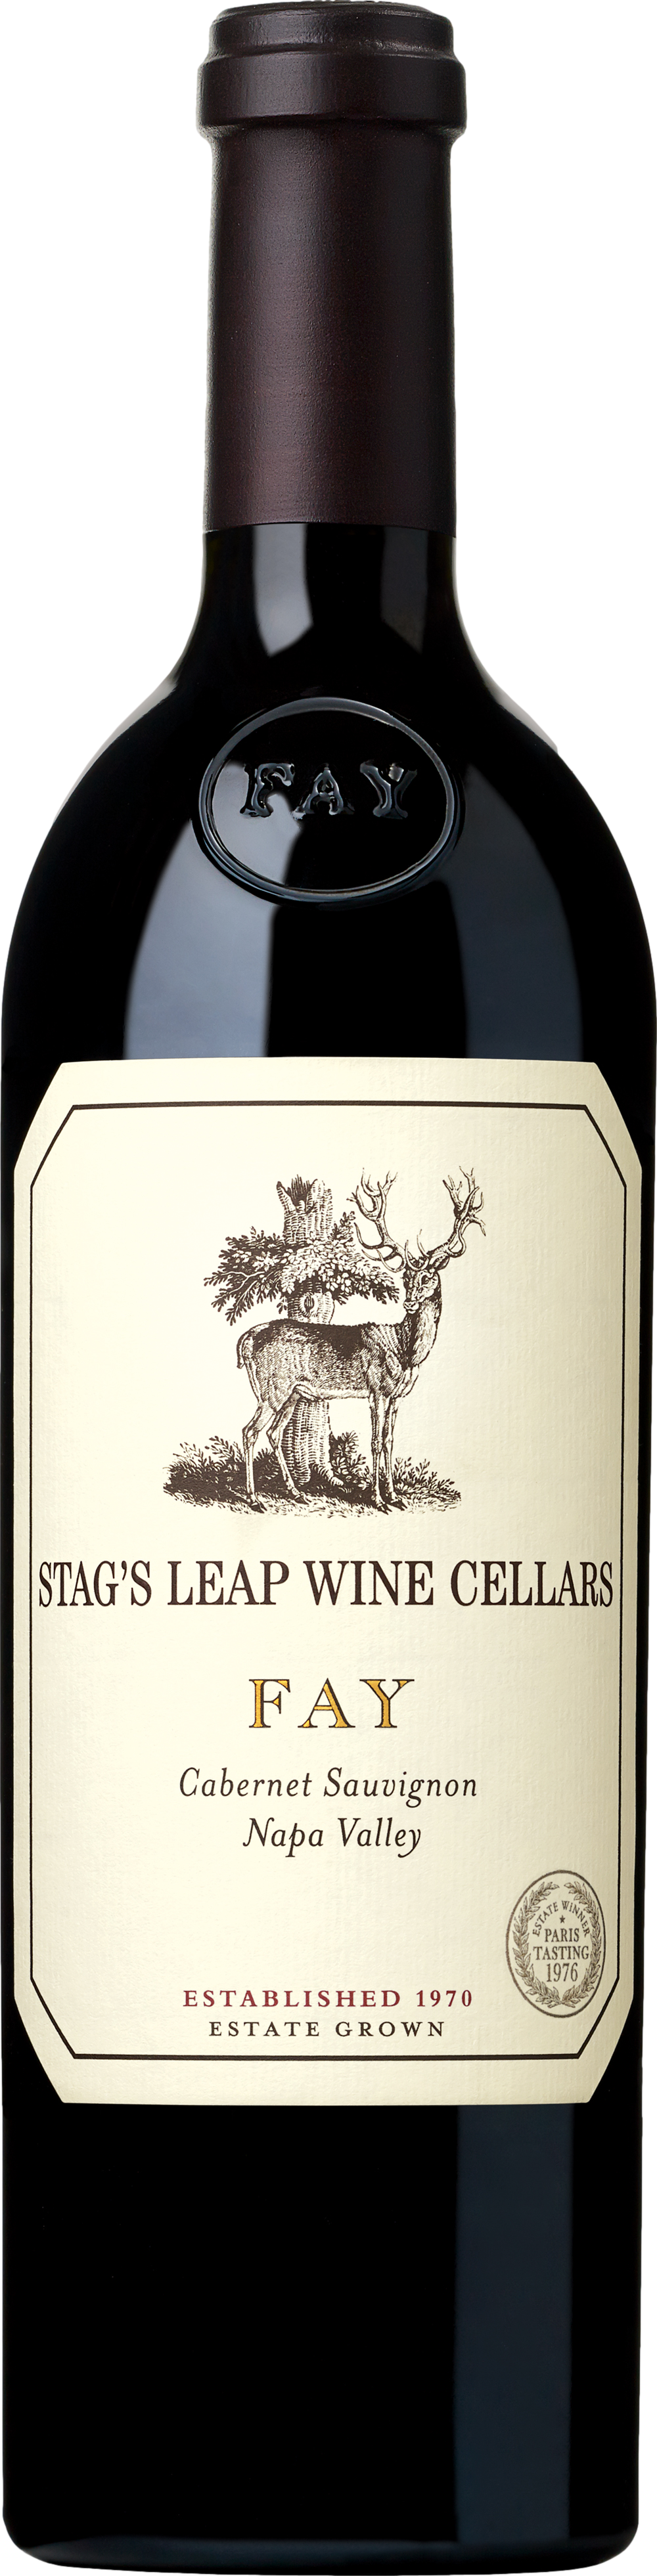 Stag's Leap Wine Cellars Fay Cabernet Sauvignon 2018 88593800047